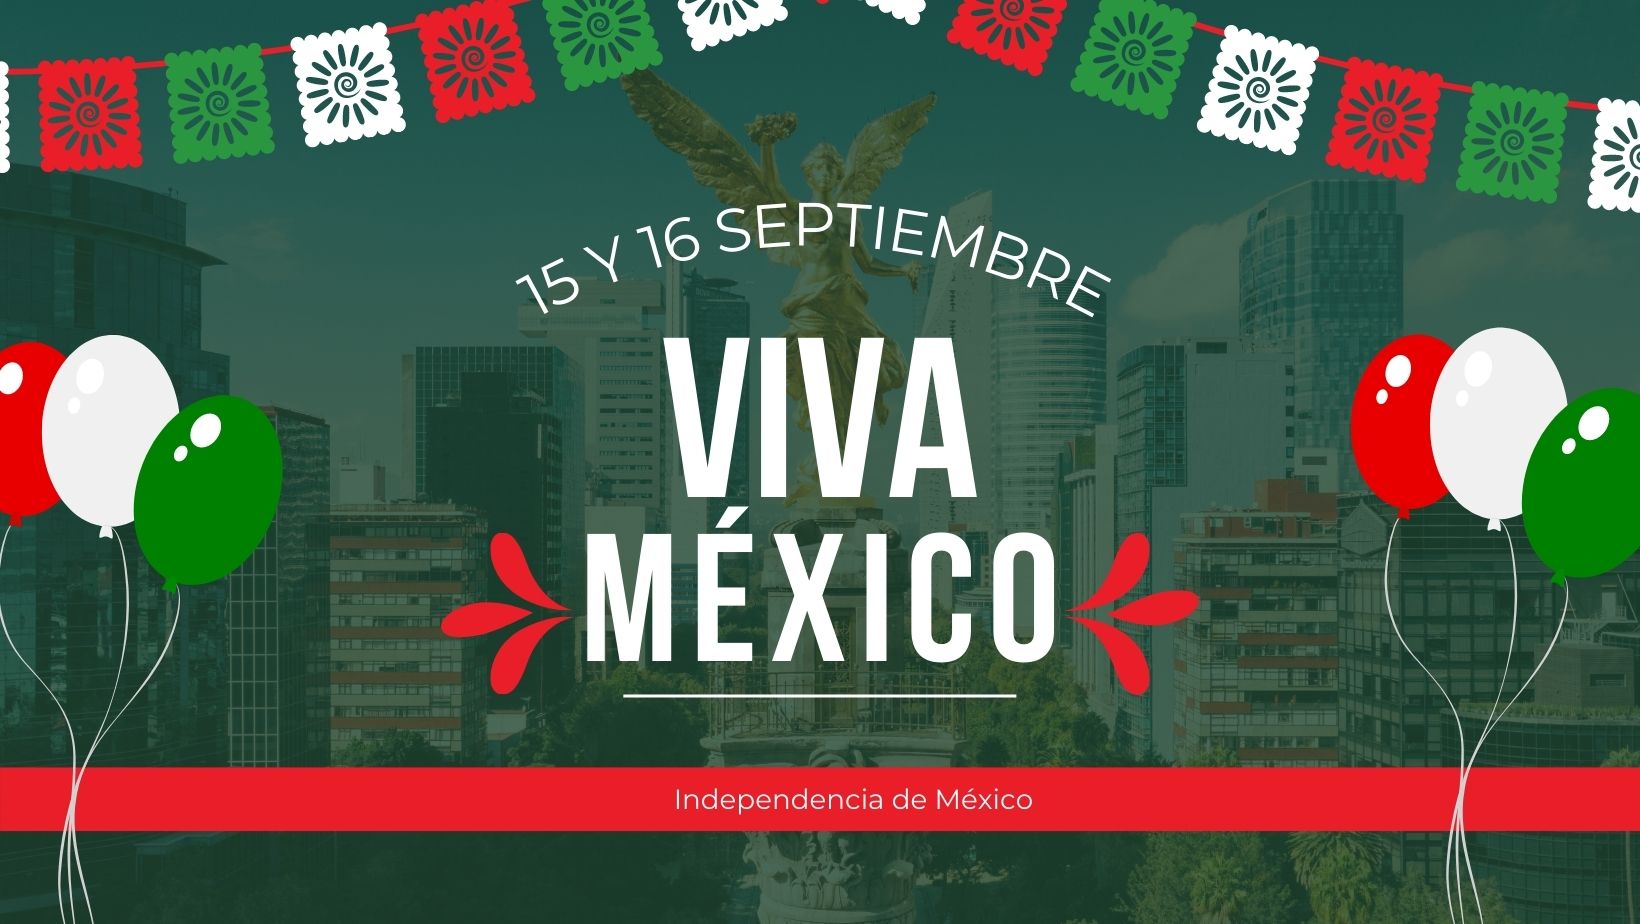 VIVA MÉXICO. Videos e imágenes para compartir y dar el Grito este 15 de  septiembre | Unión Guanajuato